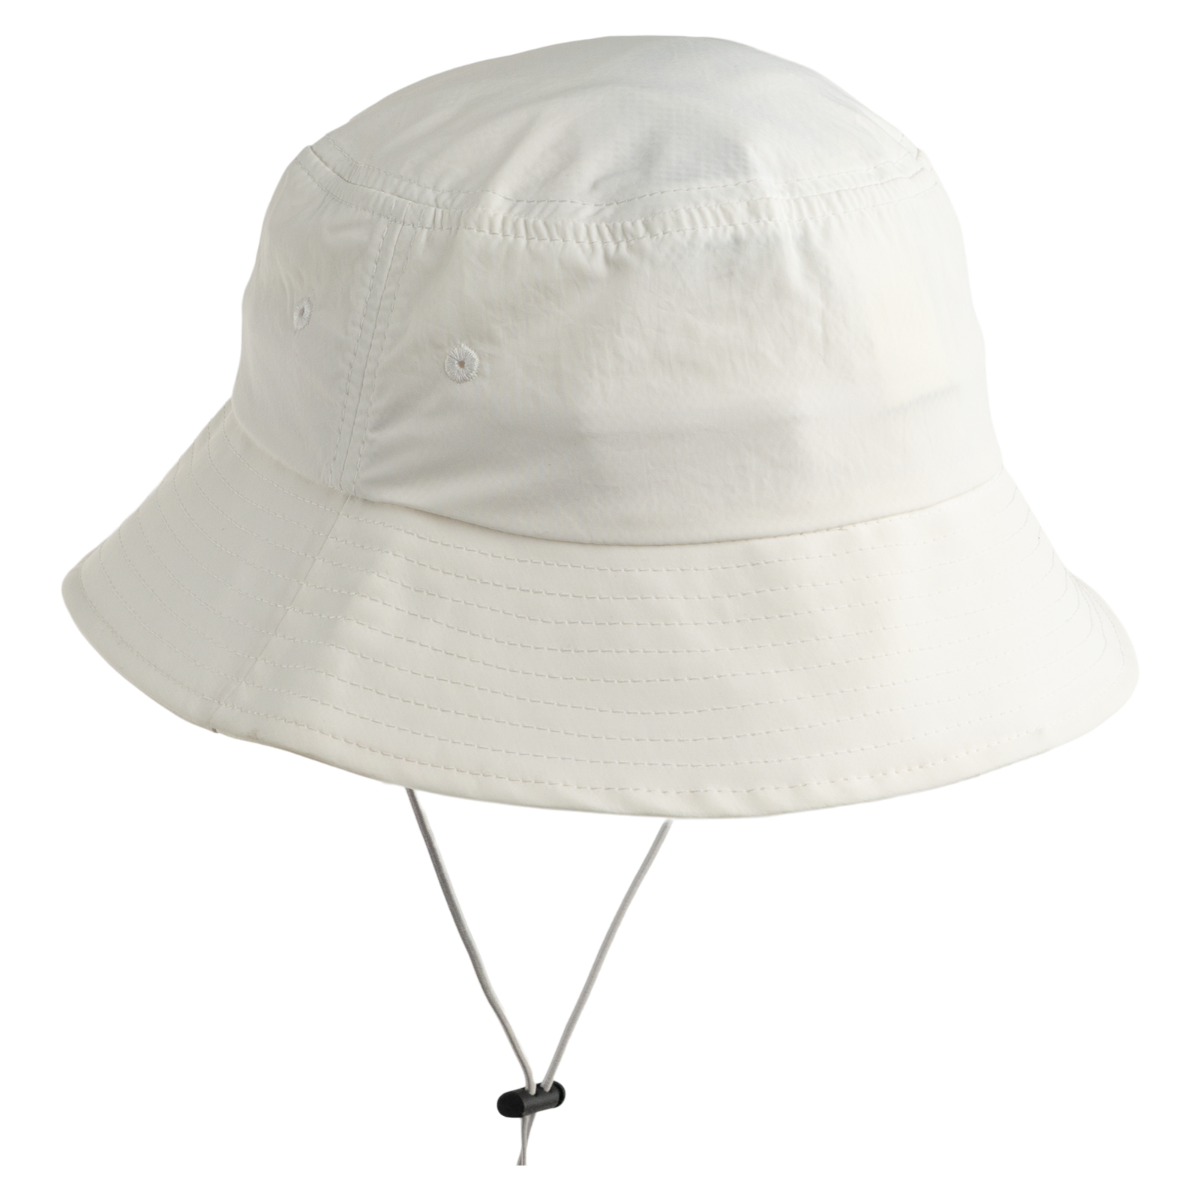 Sea-Doo Sea-Doo Sunblocker Hat